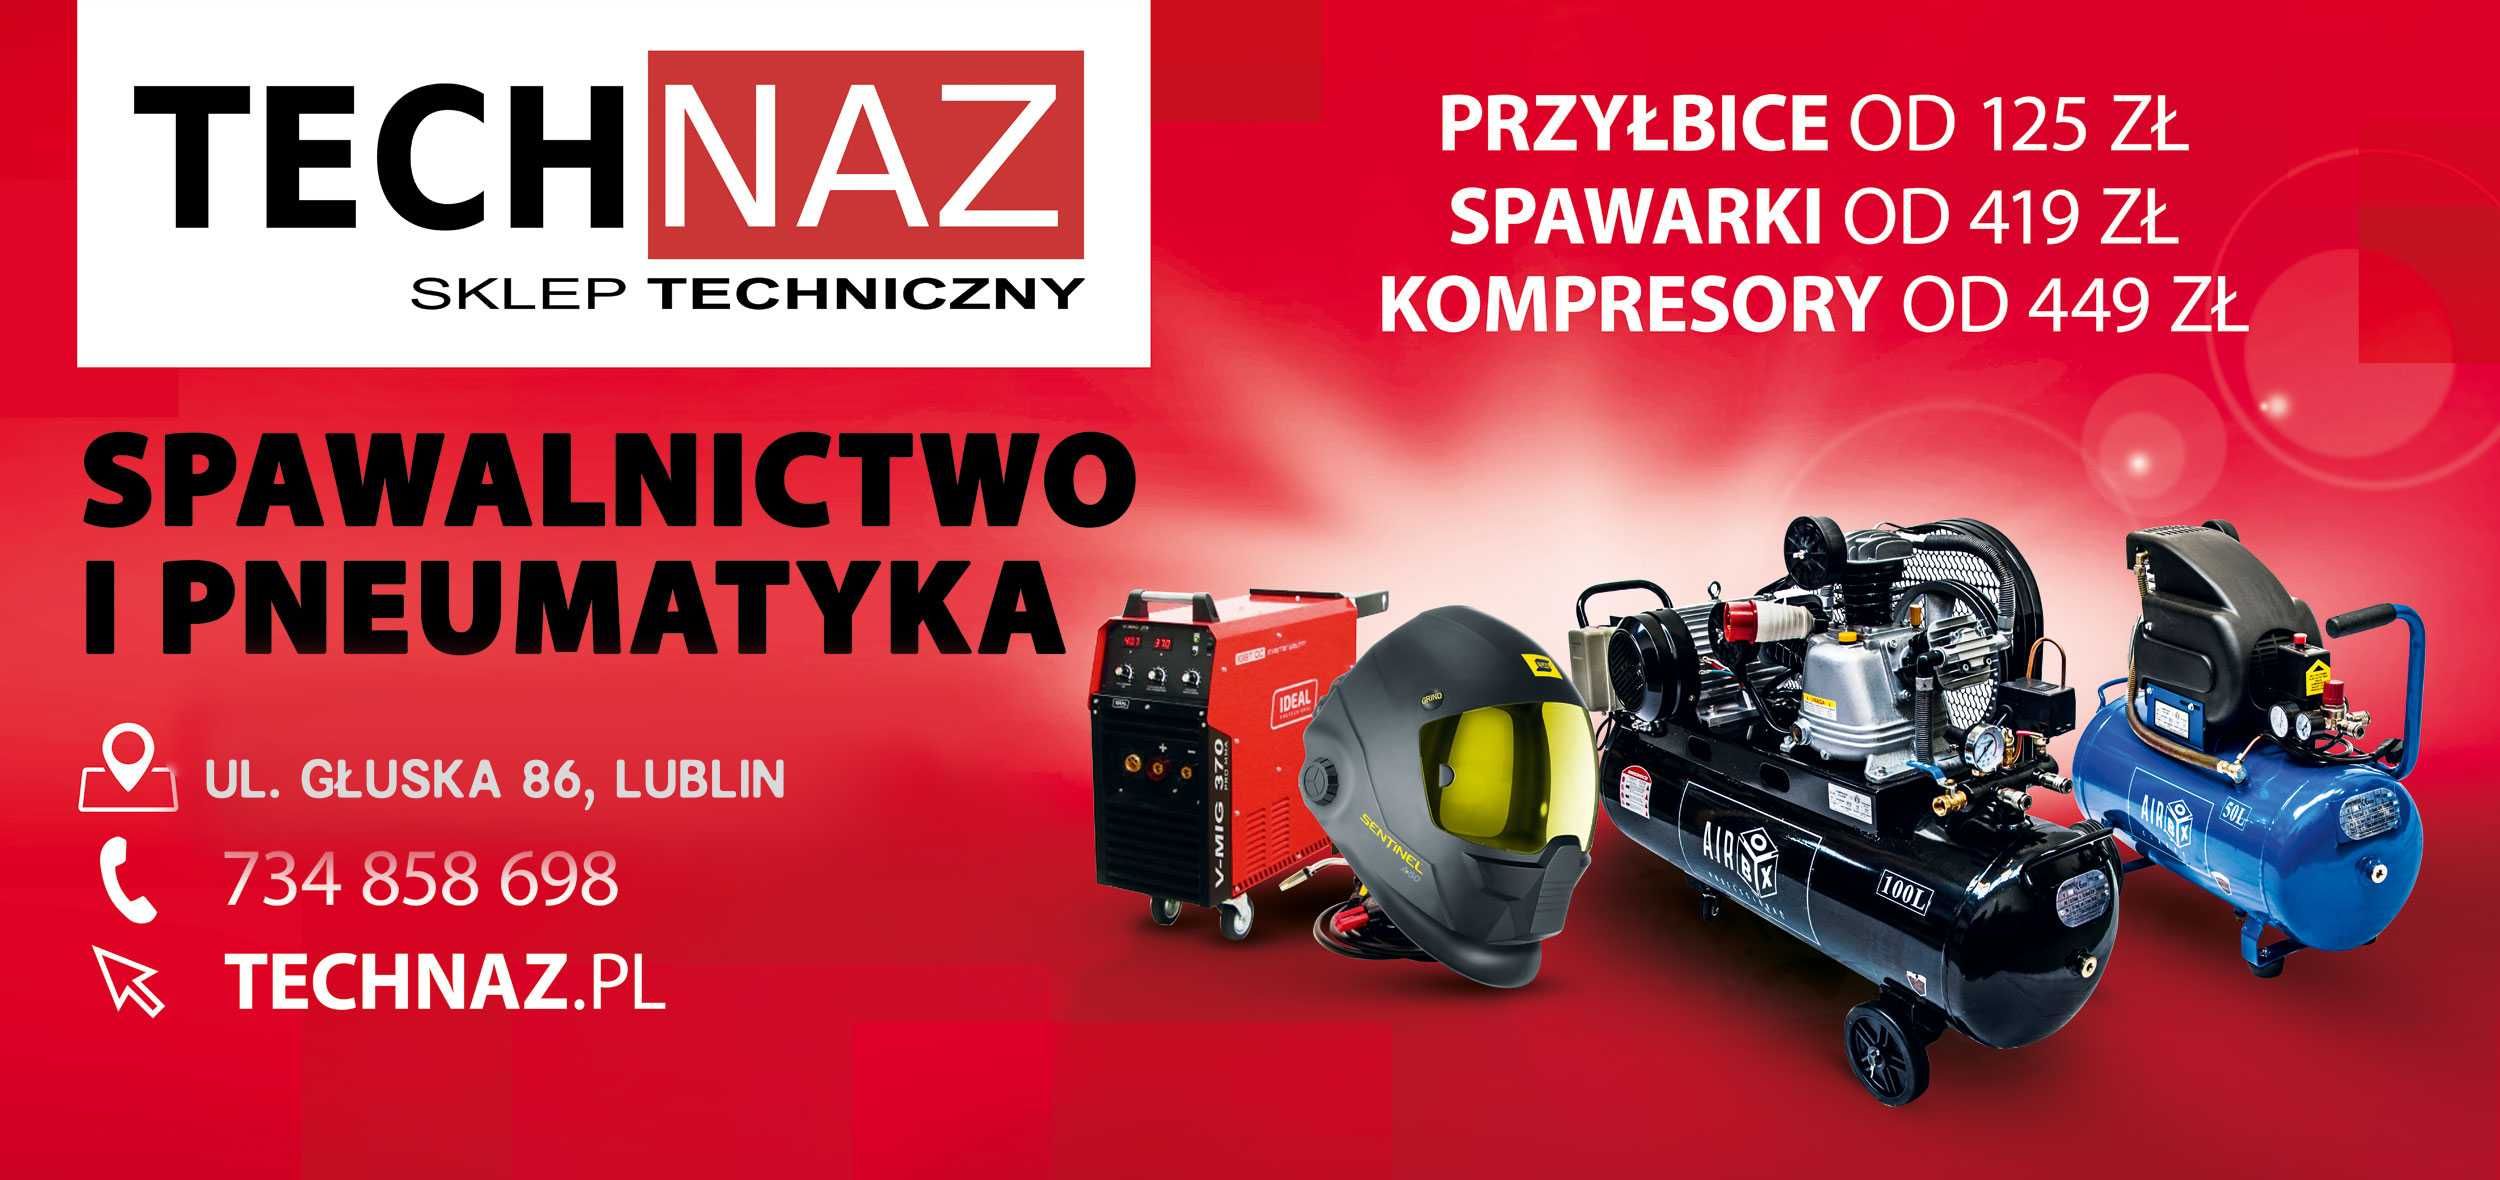 Piła Yato 1800 W 250 mm krajzega przecinarka sklep Technaz Lublin